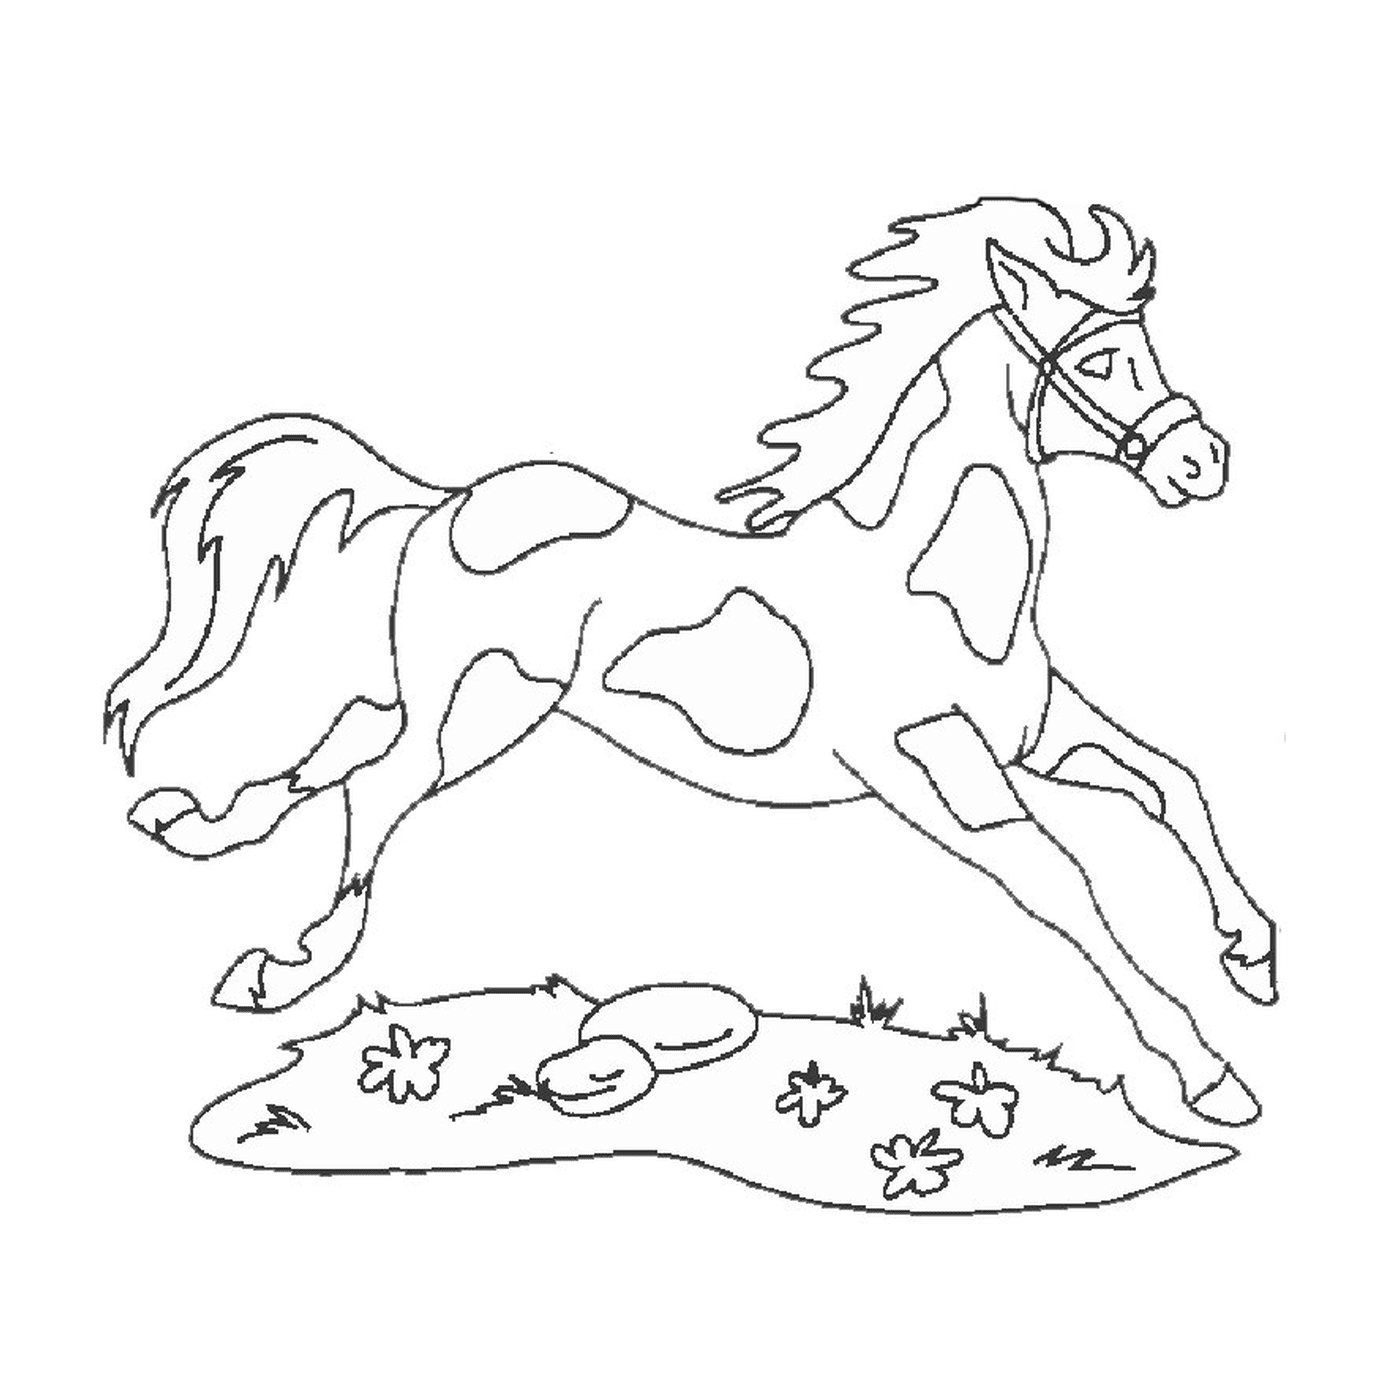  Cavalo e cão - Um cavalo correndo 